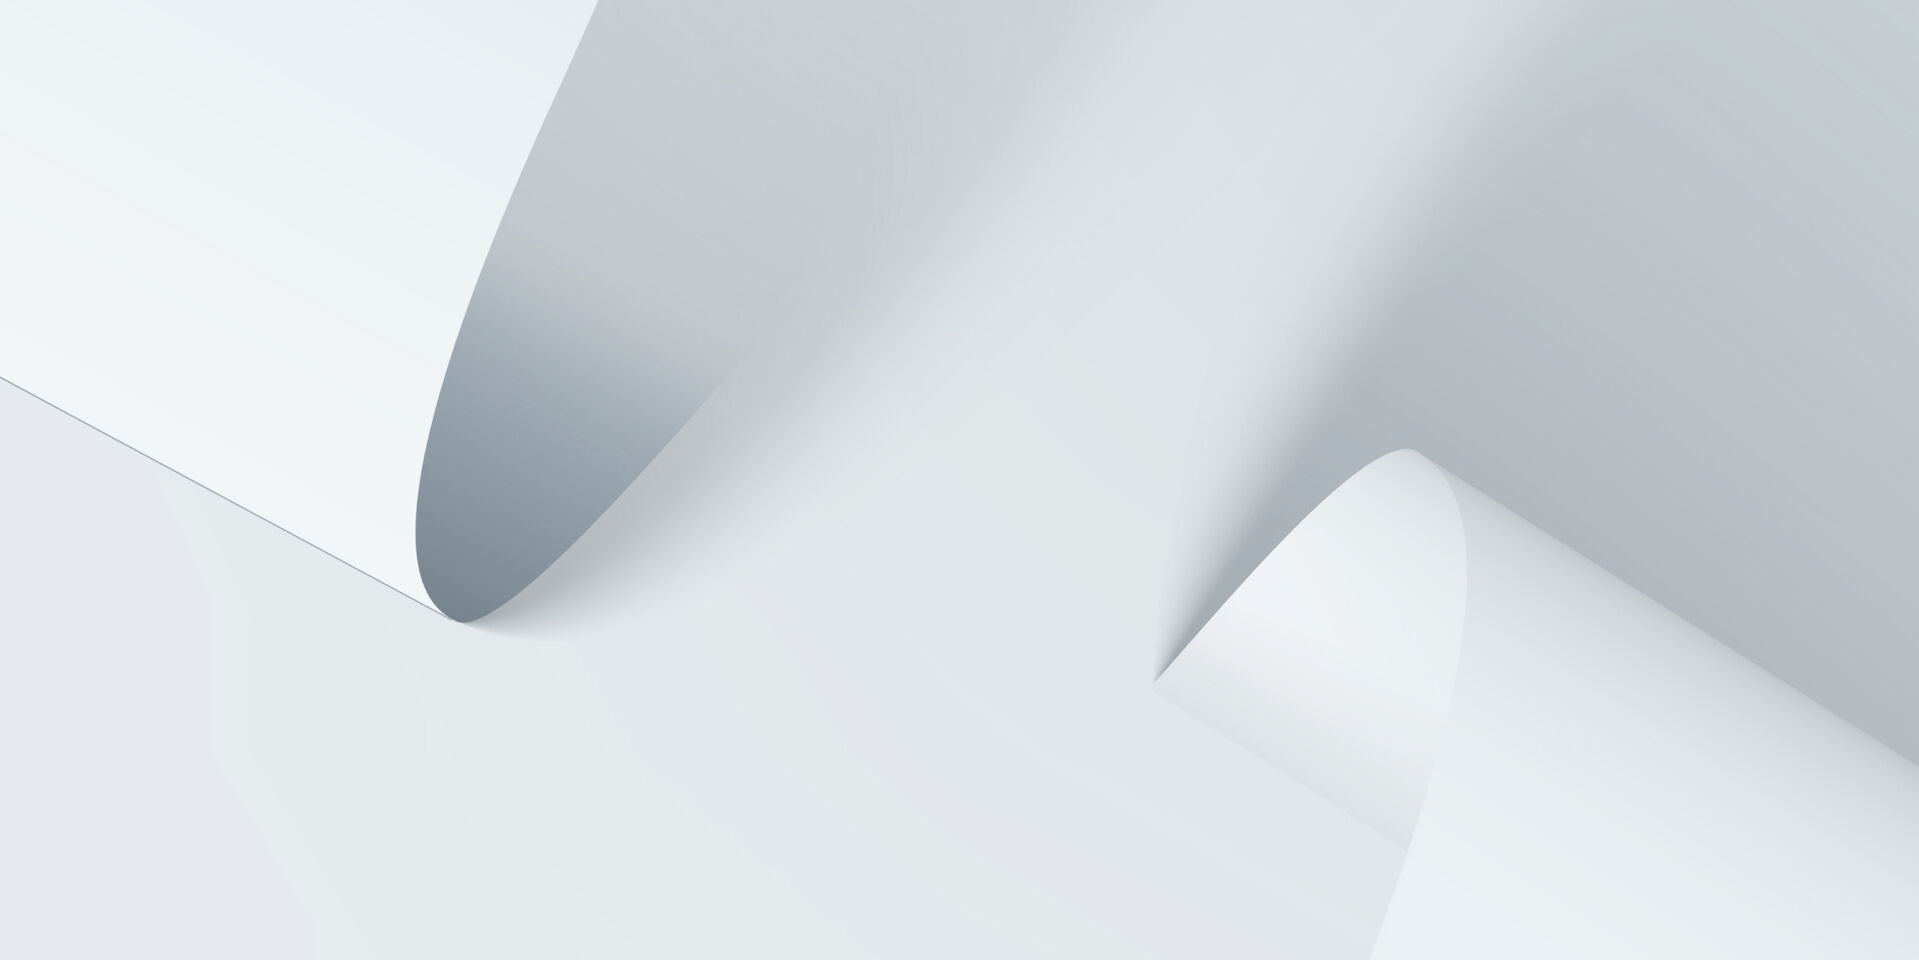 Eine abstrakte Abbildung von zwei gebogenen Papieren auf einem weißen Hintergrund